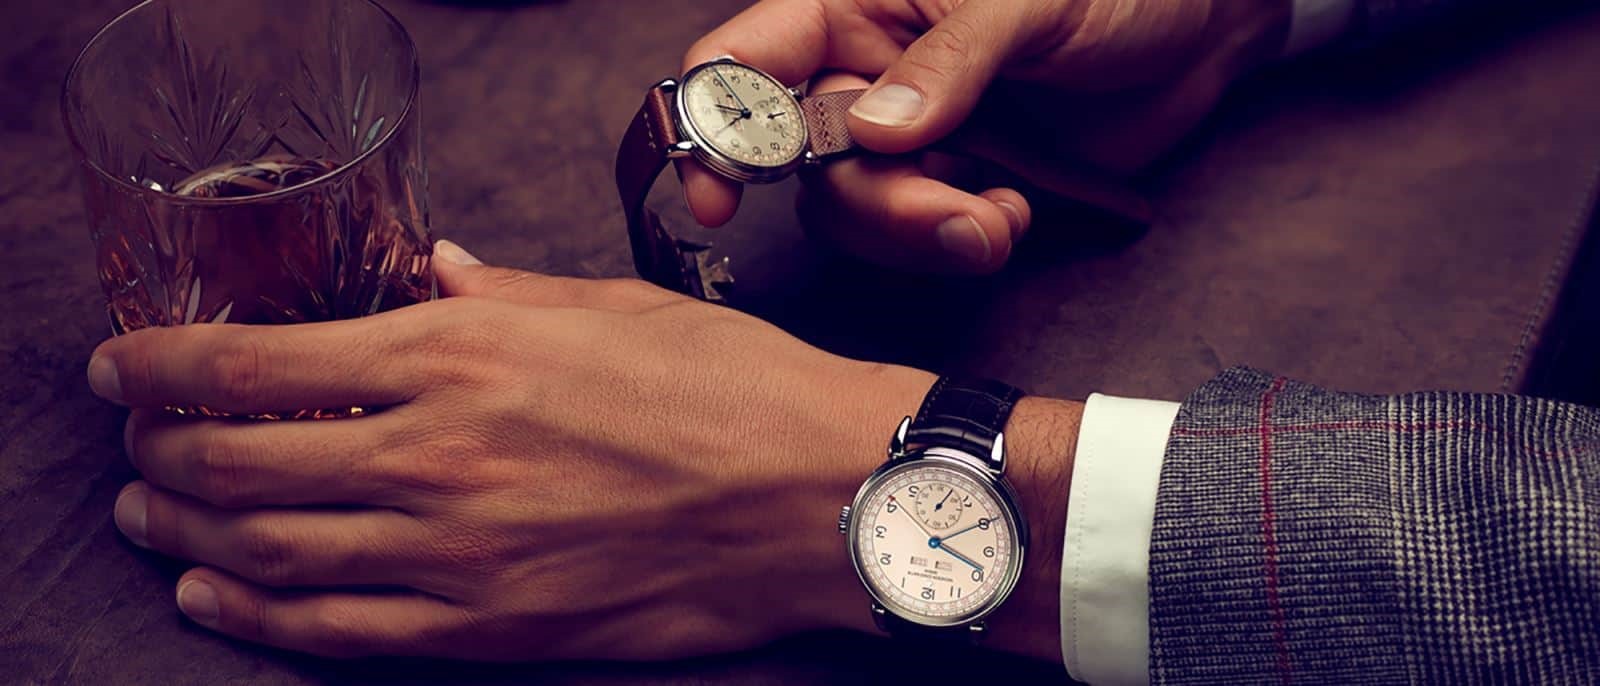 cách đeo đồng hồ Vacheron Constantin fake siêu cao cấp 1:1 đẹp